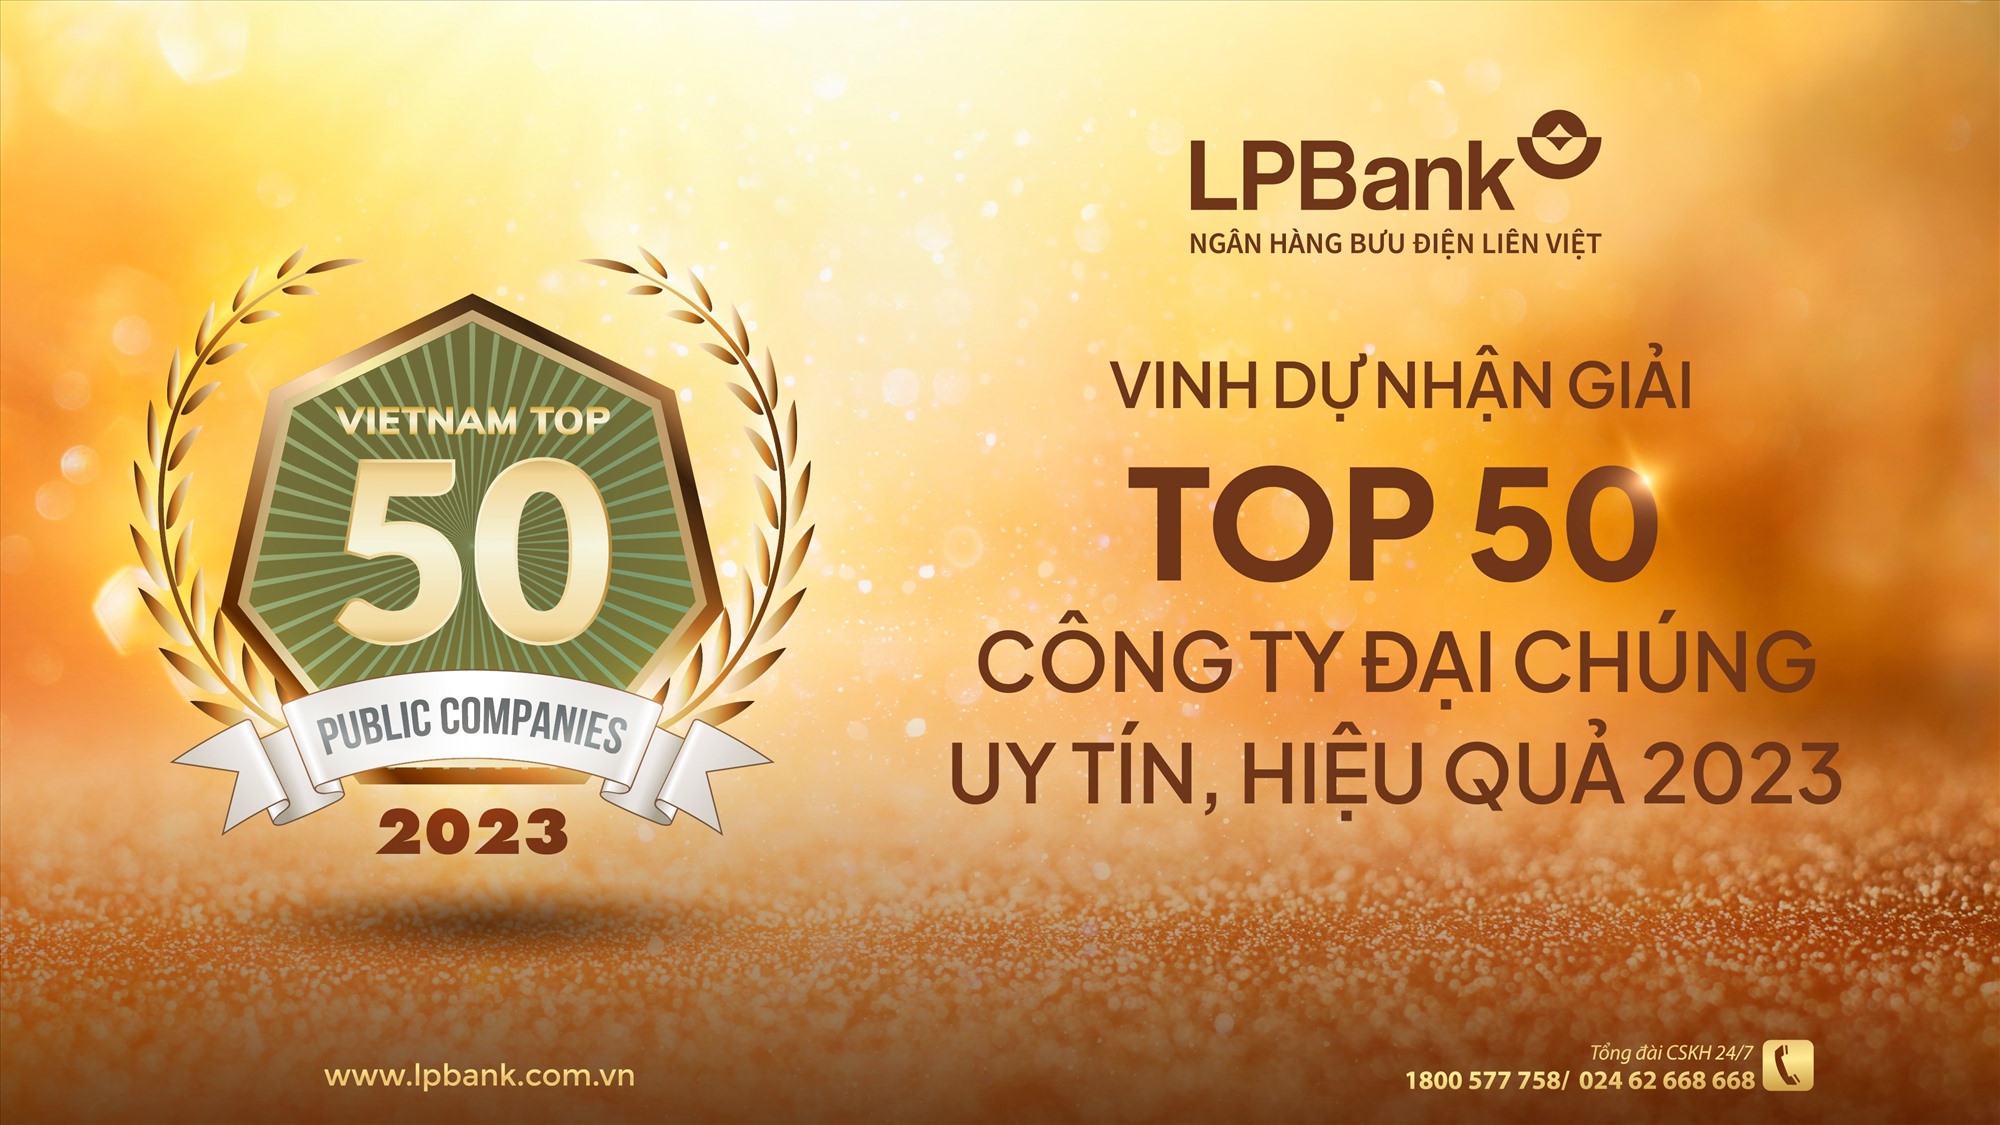 LPBank được vinh danh Top 50 Công ty Đại chúng uy tín và hiệu quả năm 2023. Ảnh LPB